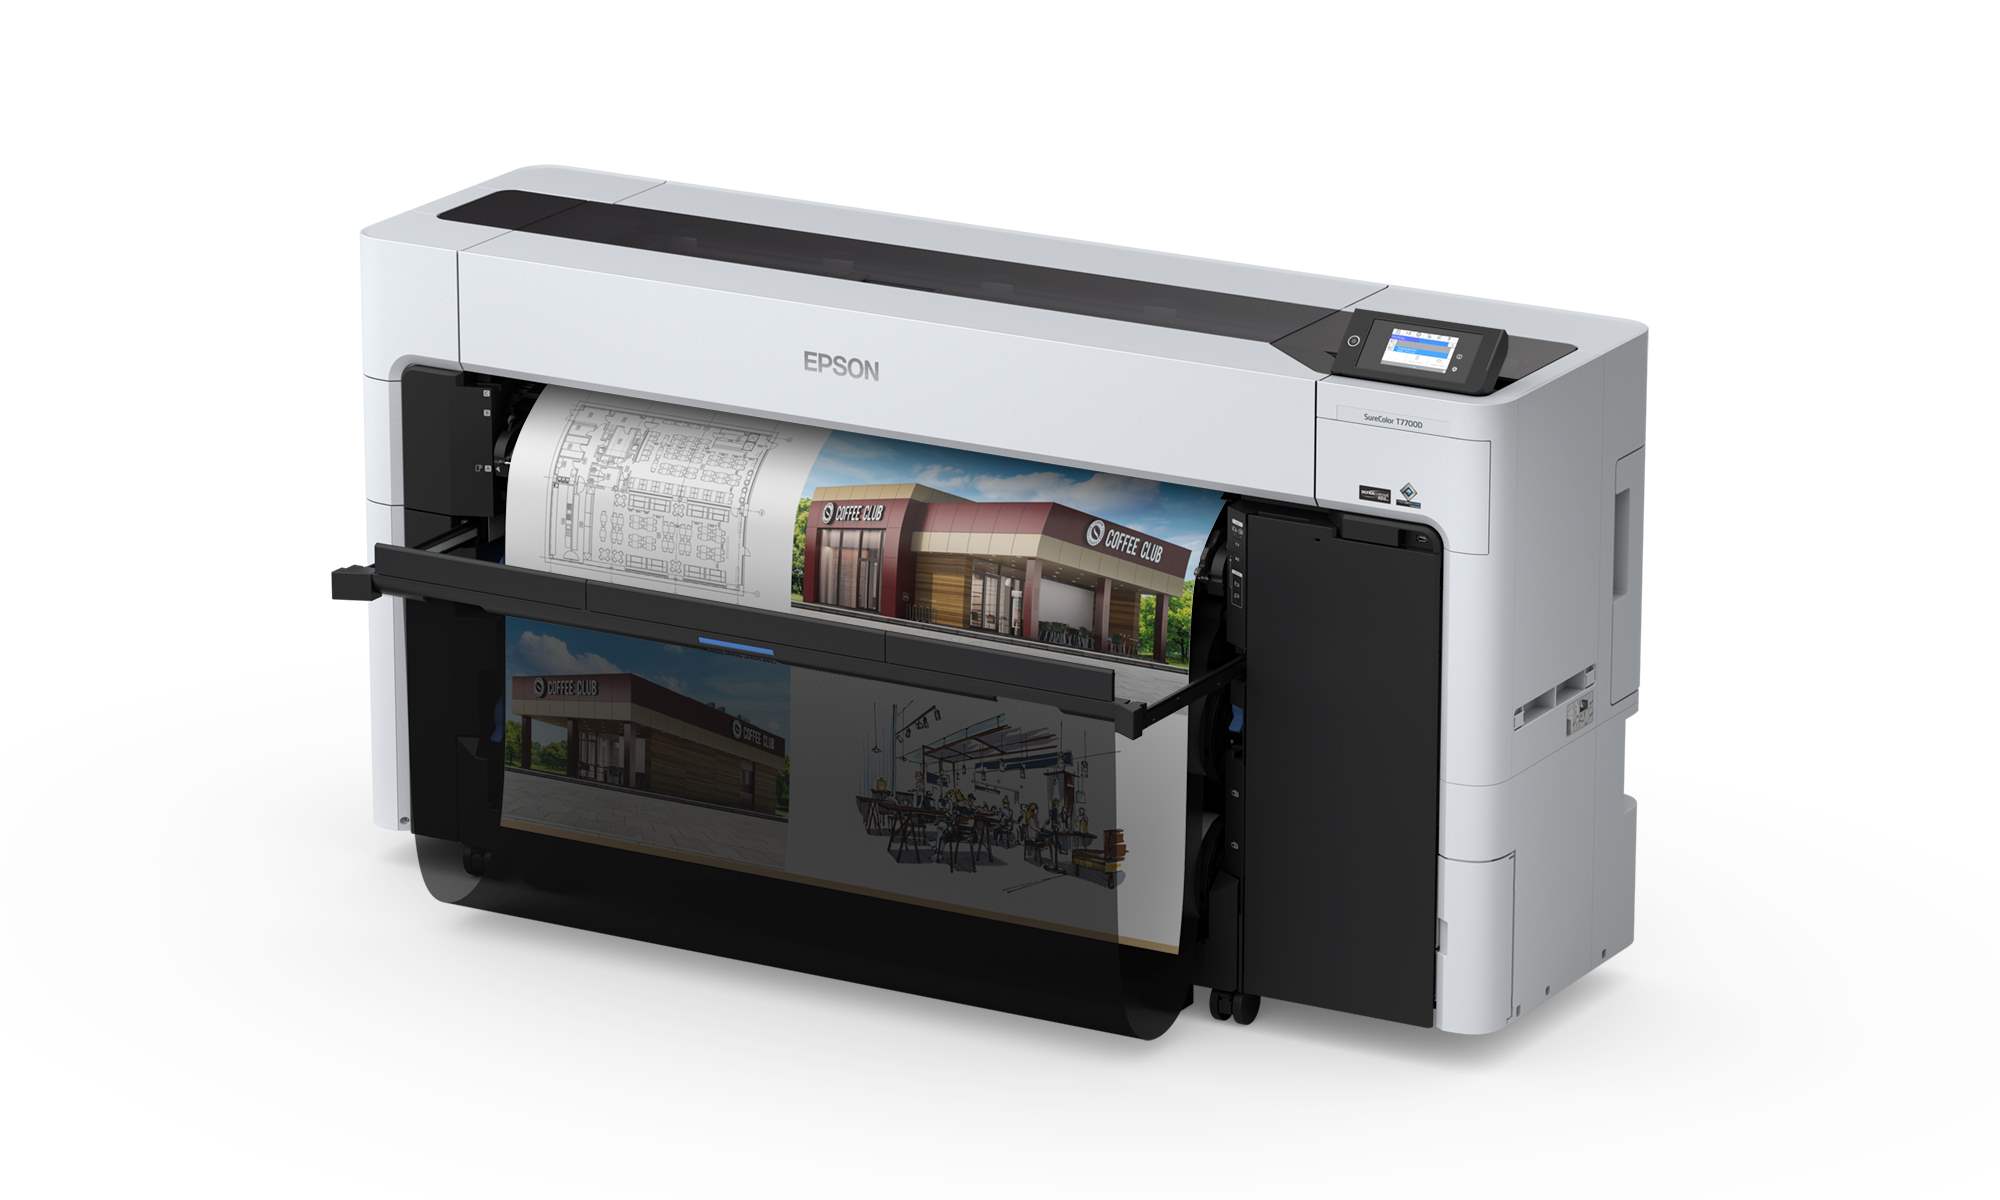 EPSON tiskárna ink SURECOLOR SC-T7700D (220V)5 